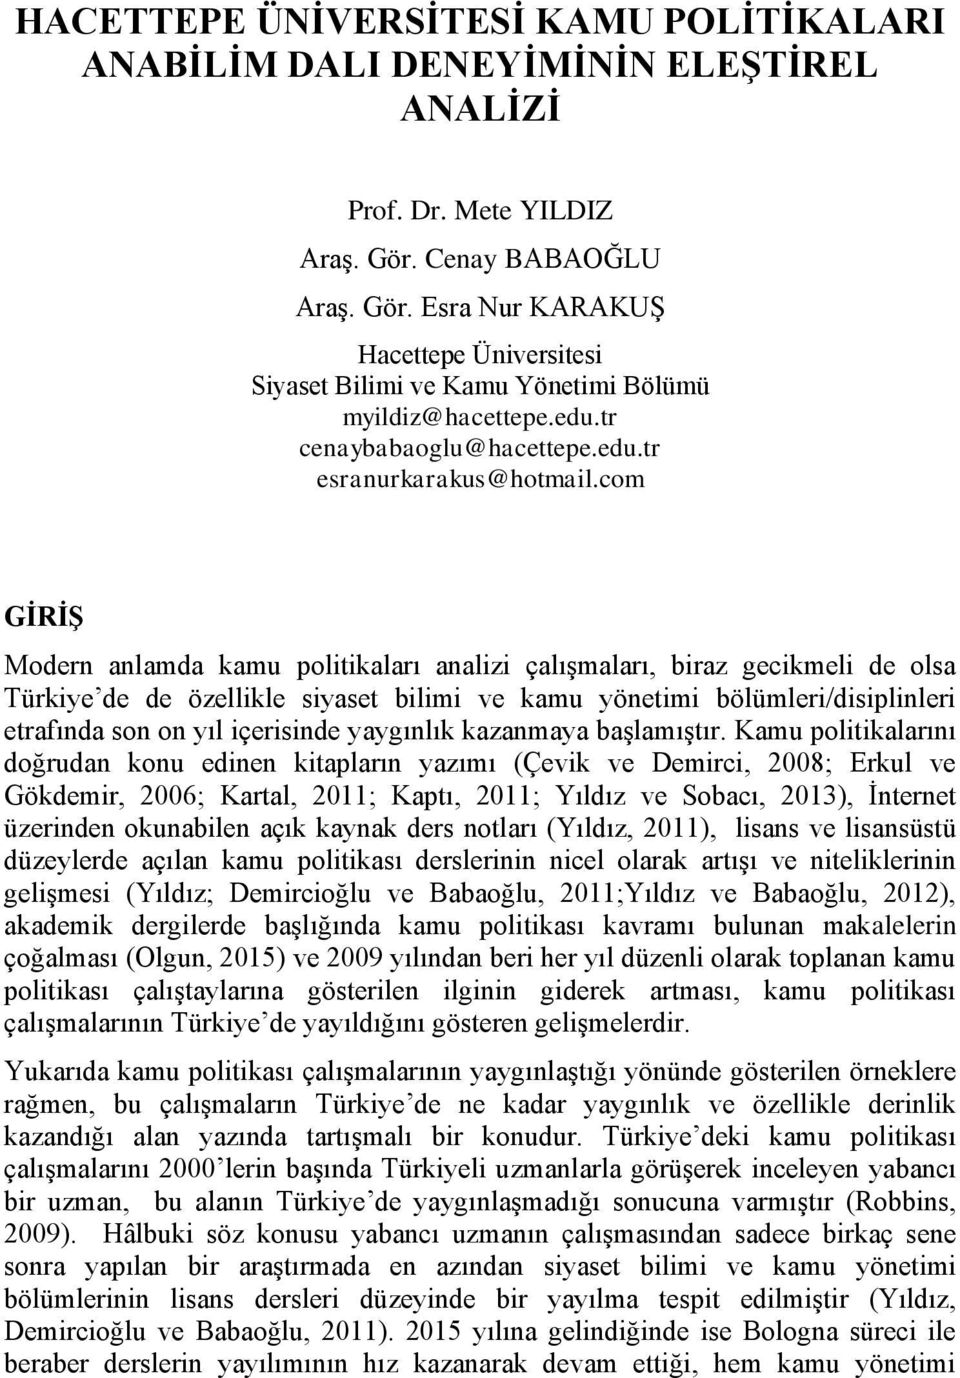 com GİRİŞ Modern anlamda kamu politikaları analizi çalışmaları, biraz gecikmeli de olsa Türkiye de de özellikle siyaset bilimi ve kamu yönetimi bölümleri/disiplinleri etrafında son on yıl içerisinde